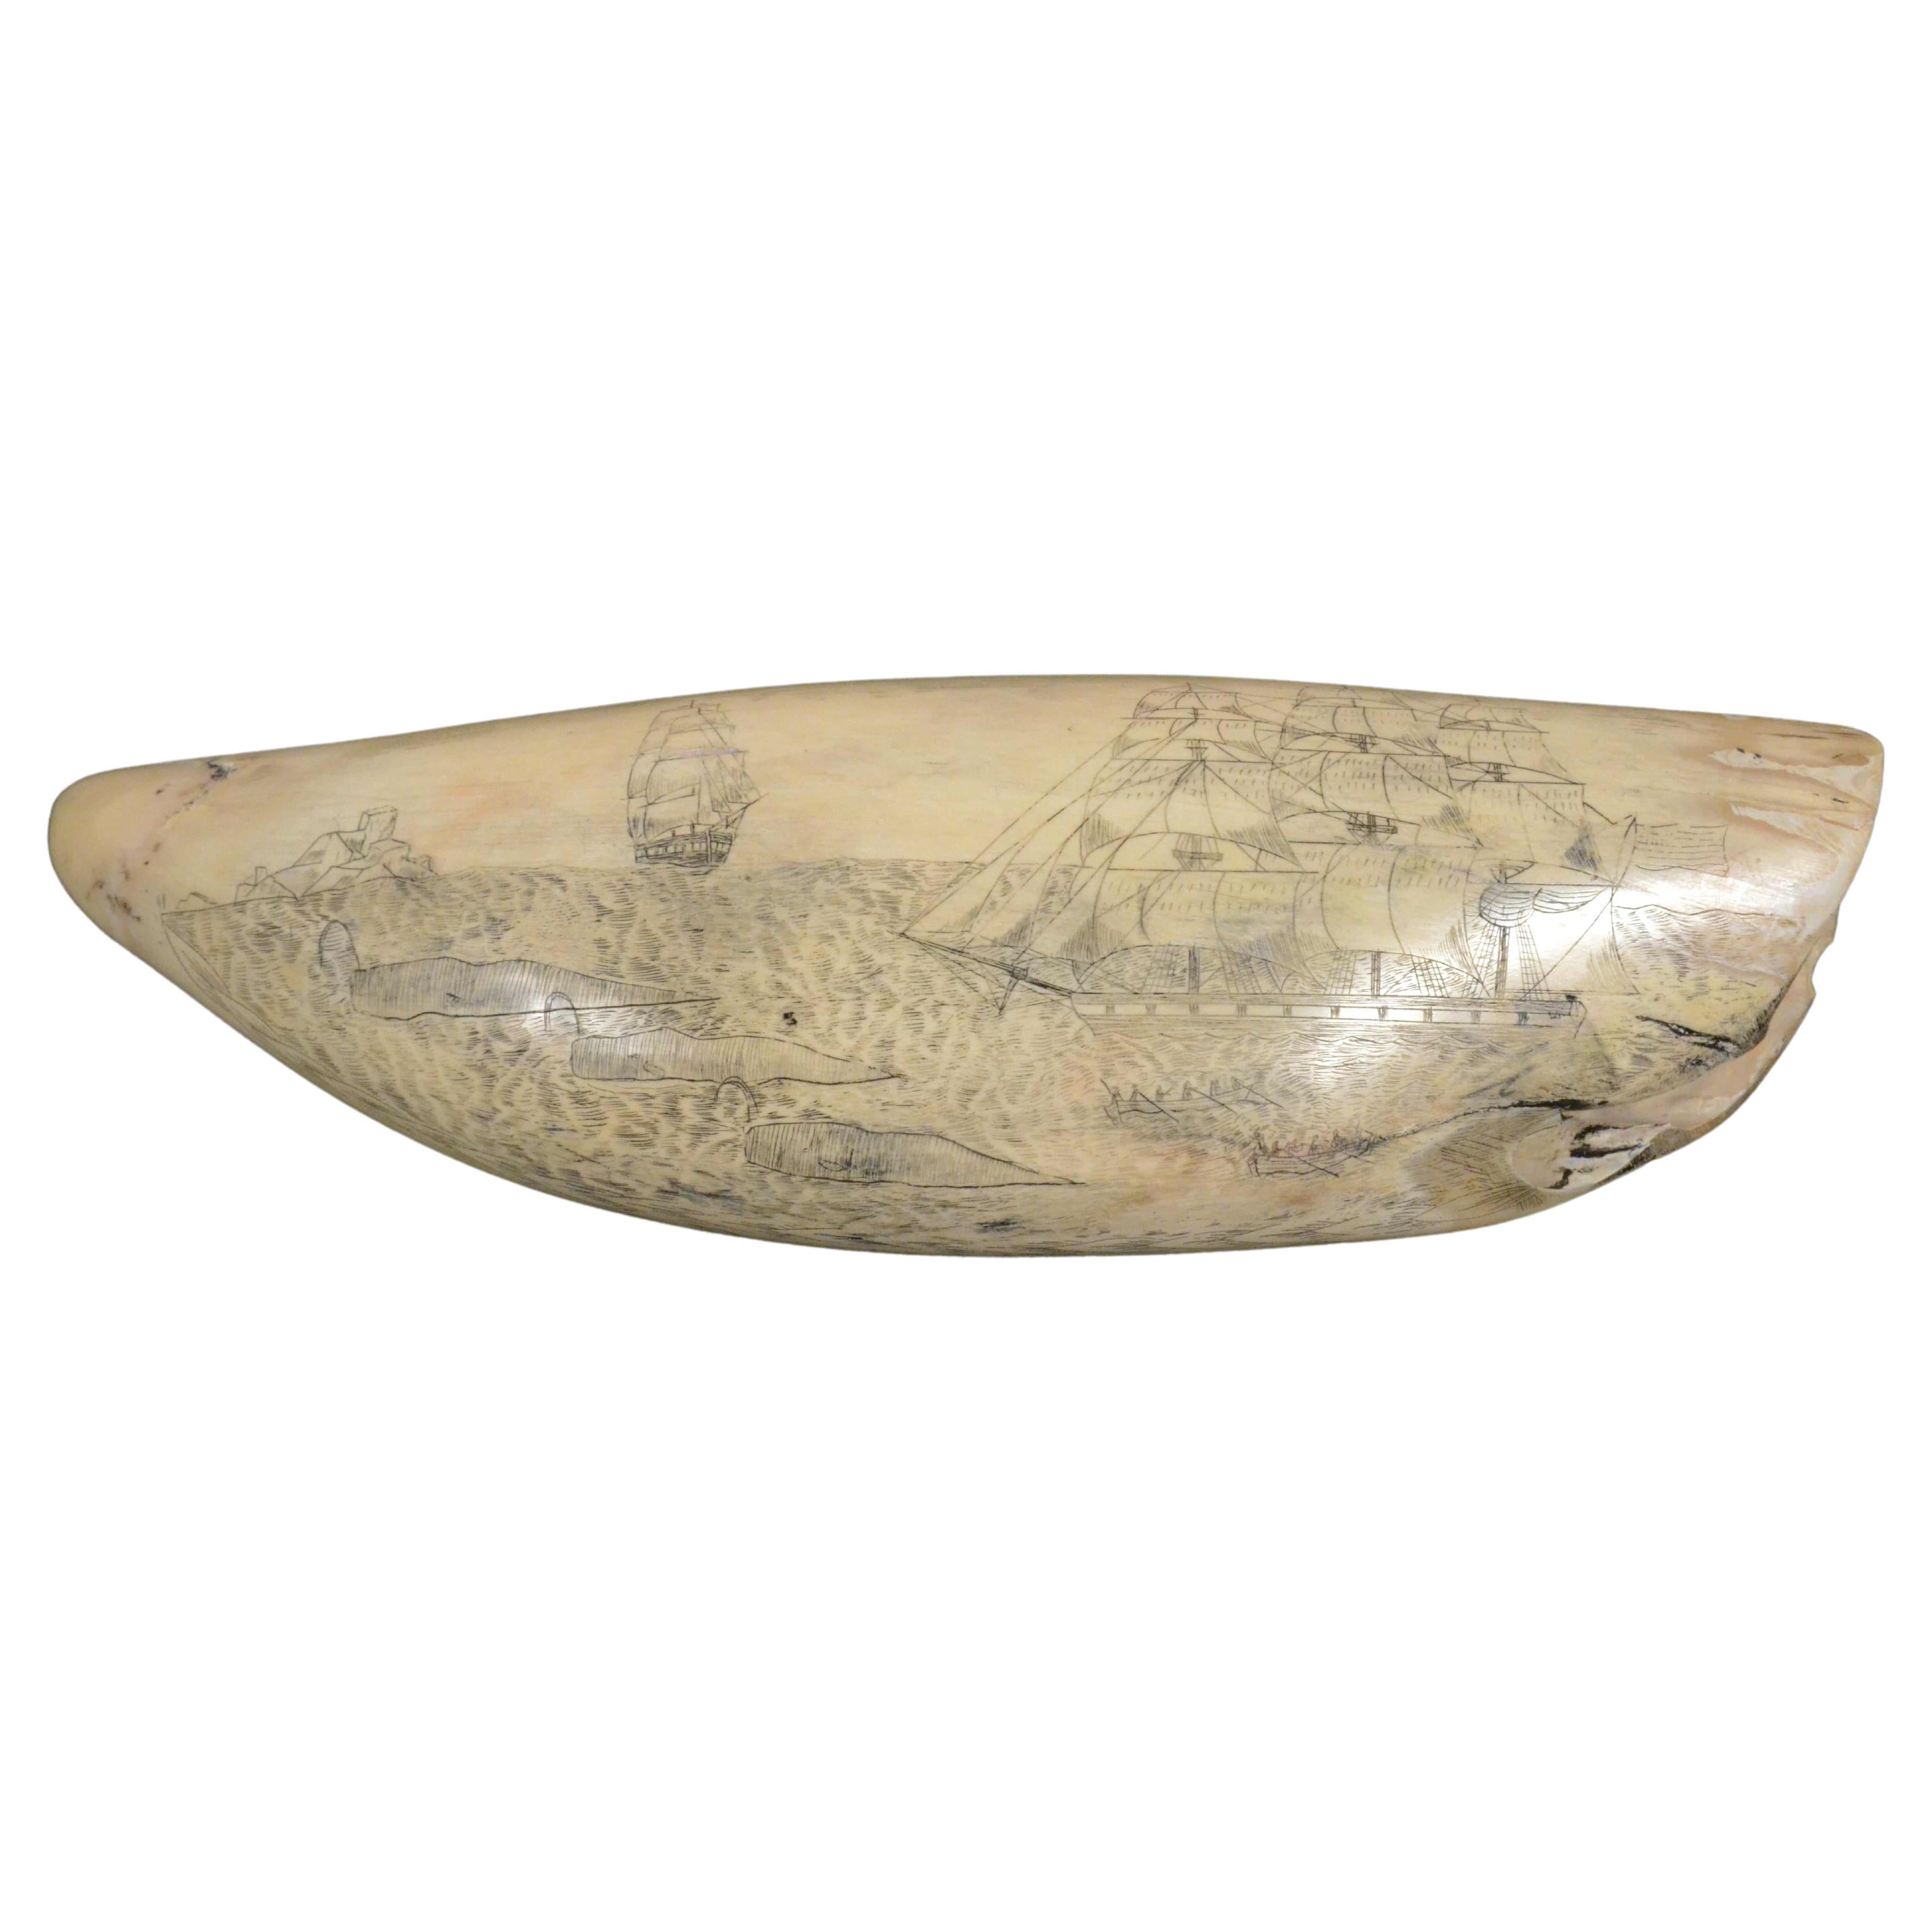 Scrimshaw originale di un dente di balena inciso datato 1853 lunghezza inch 7.7